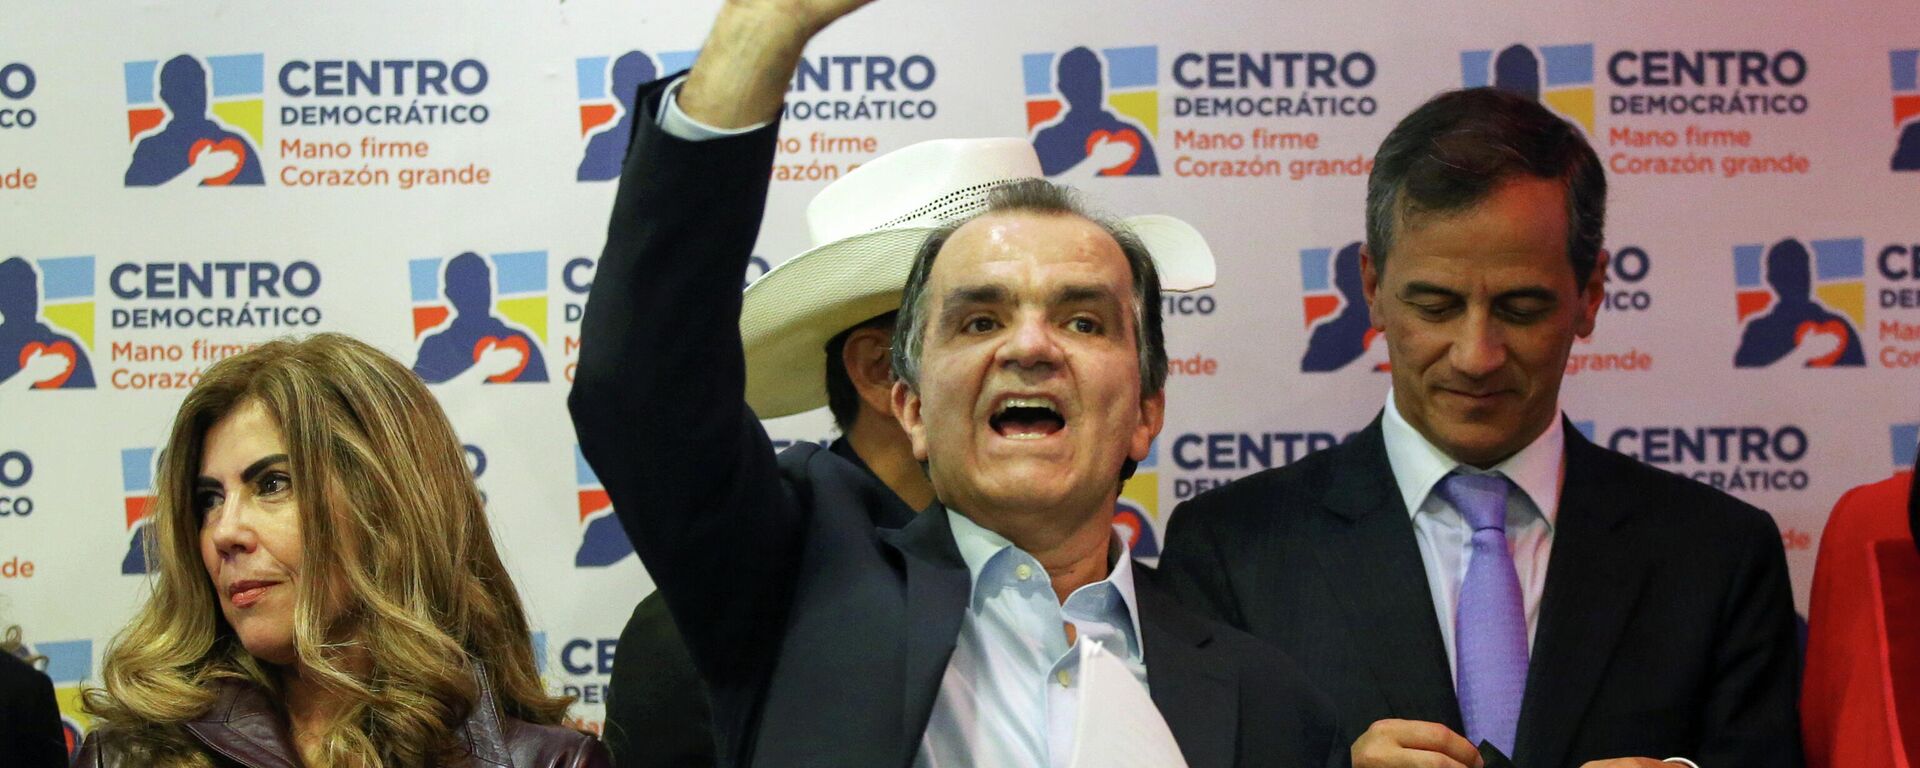 Óscar Iván Zuluaga, candidato del Centro Democrático para las elecciones de Colombia de 2022 - Sputnik Mundo, 1920, 23.11.2021